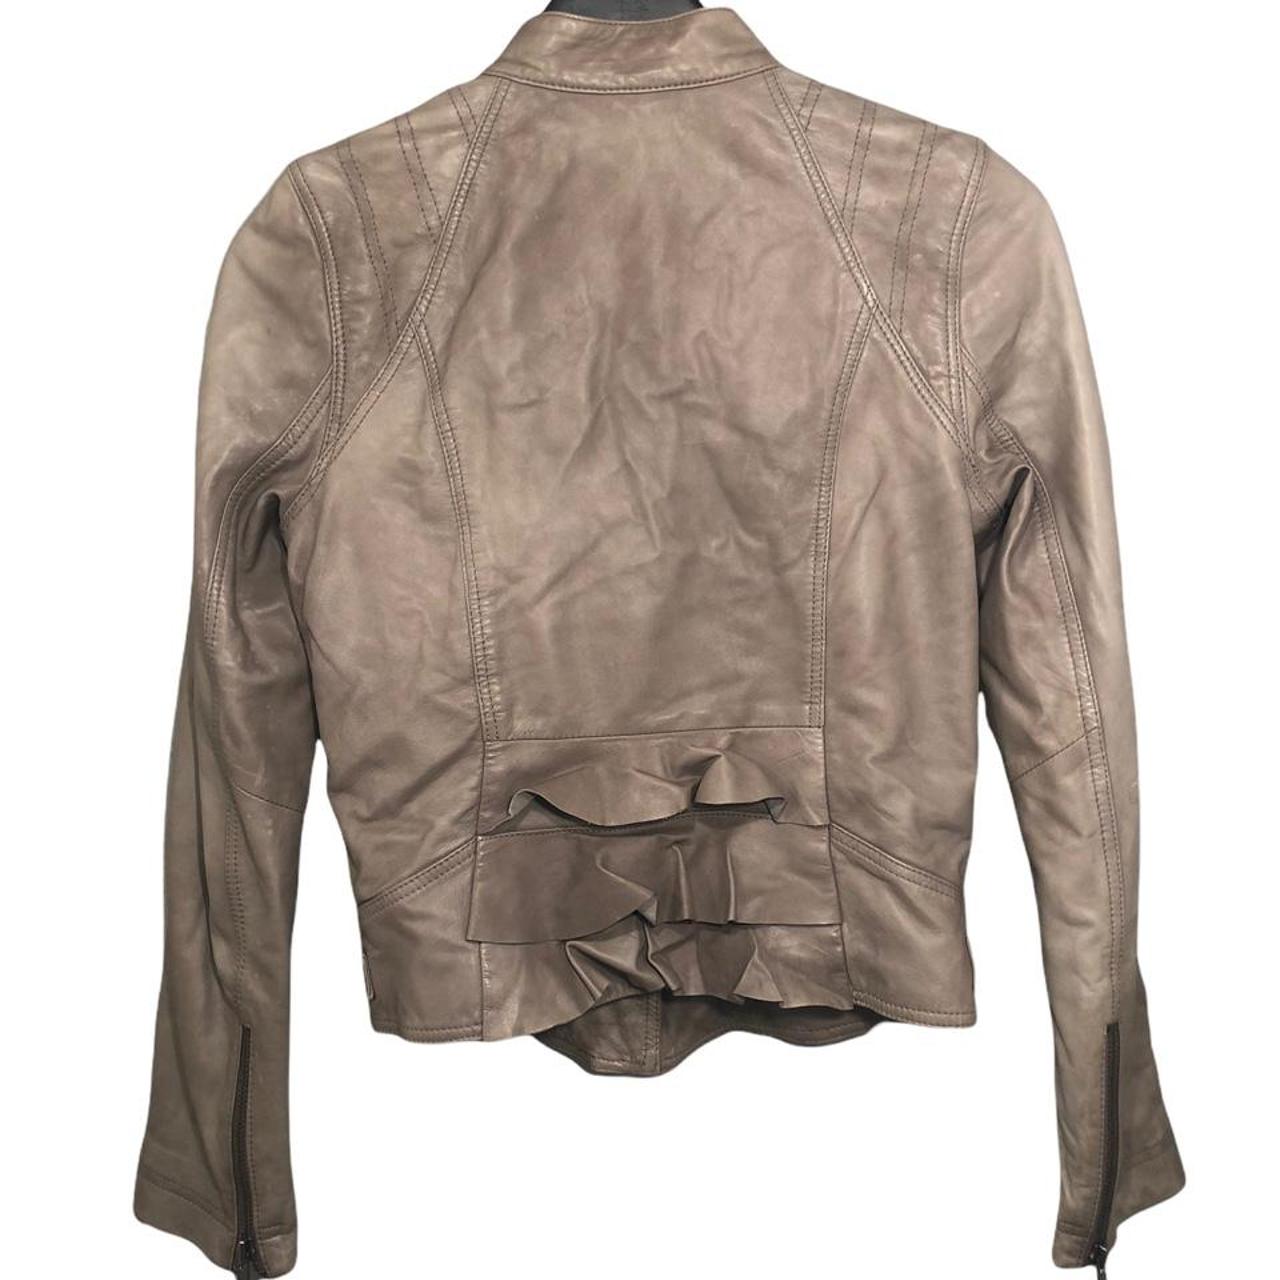 Product Image 4 - ⭐️Beige leather jacket from HINGE
⭐️Measurements